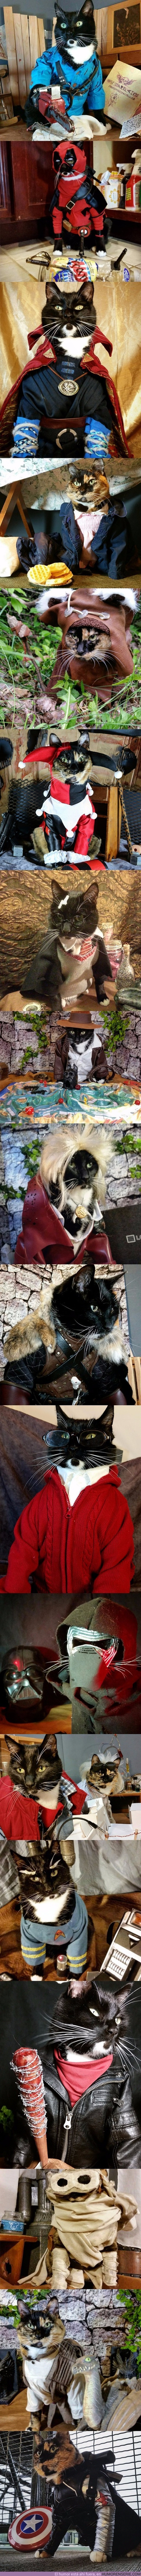 6961 - Gatos interpretando a grandes personajes del cine y las series. ¿Los reconoces a todos?